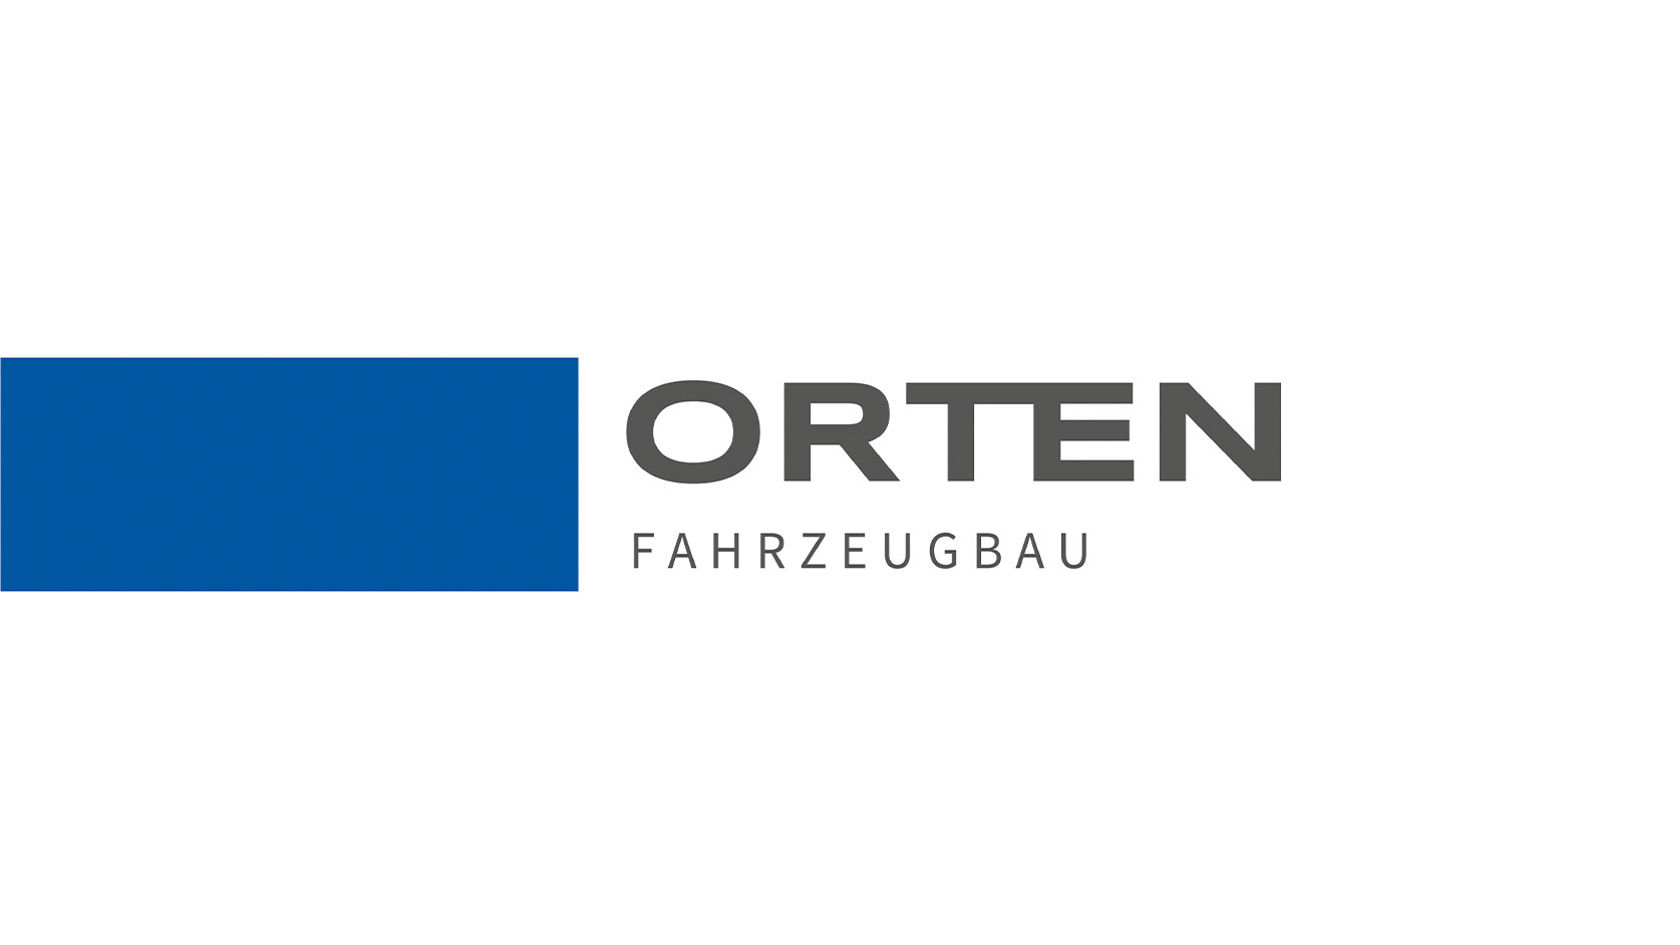 ORTEN GmbH & Co. KG Fahrzeugbau & -vertrieb